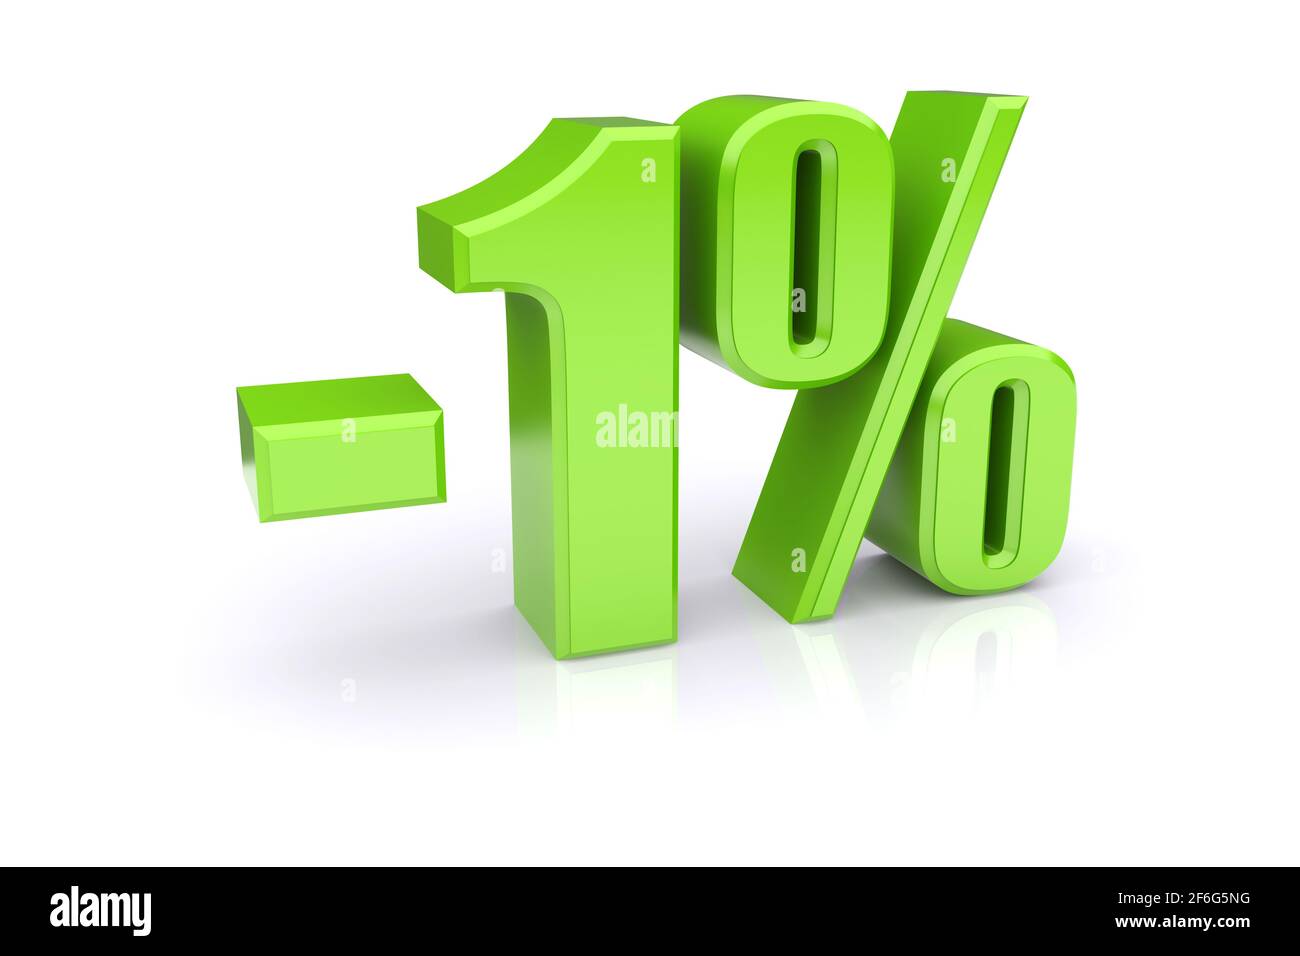 Icona verde del tasso percentuale 1% su sfondo bianco. immagine 3d rappresentata Foto Stock